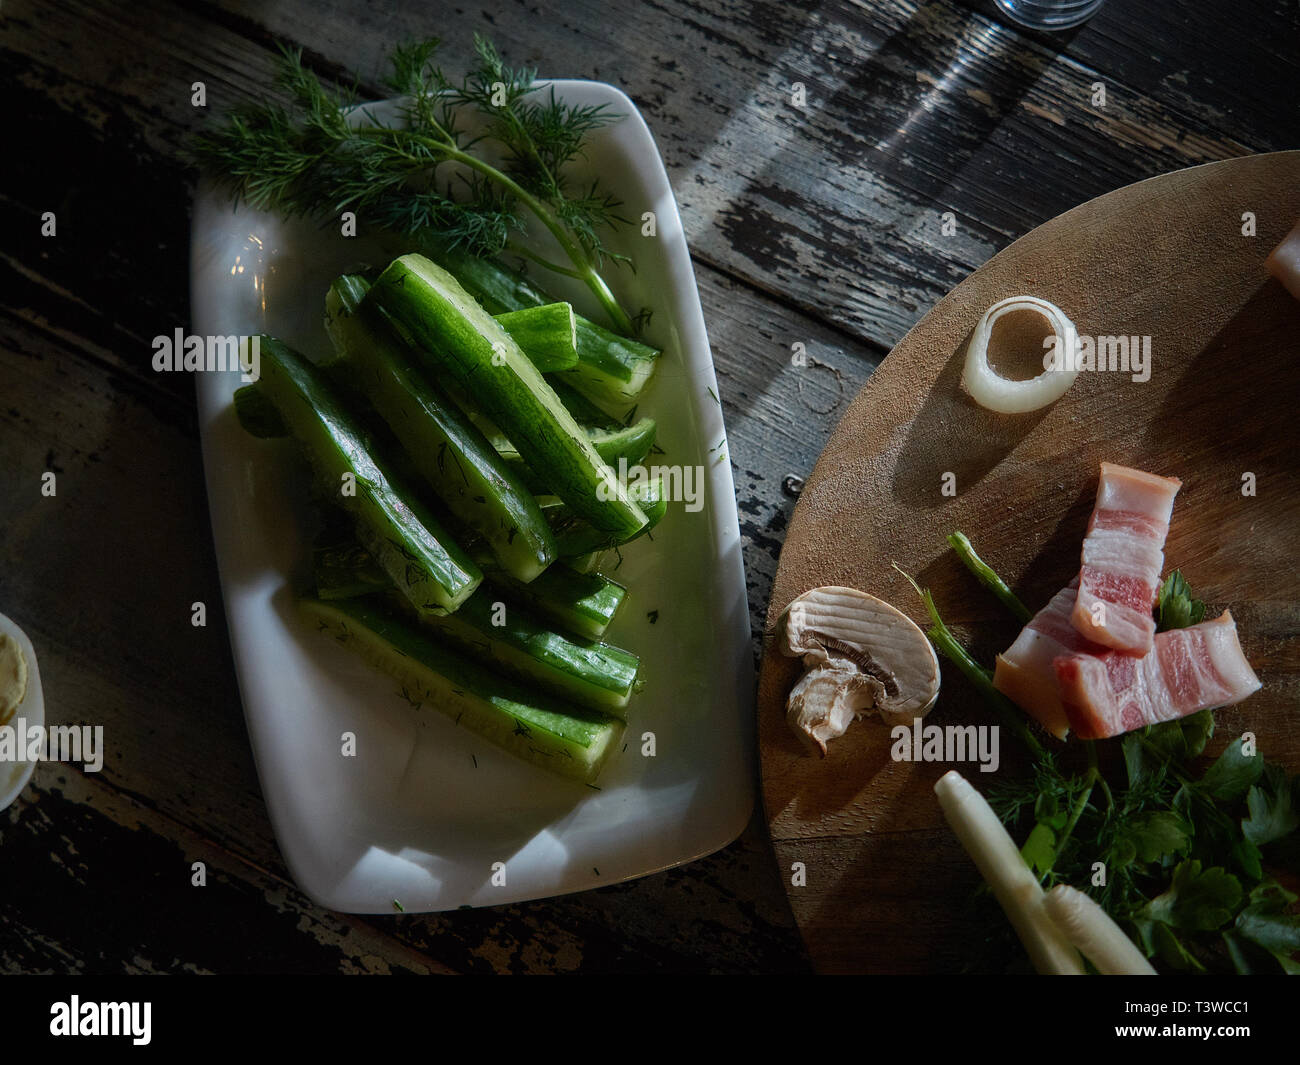 Fresche, bassa-coltivati cetrioli decorate con le cipolle verdi sono serviti. A una certa distanza, tagliare un paio di pezzi di carni suine fresche. Foto Stock